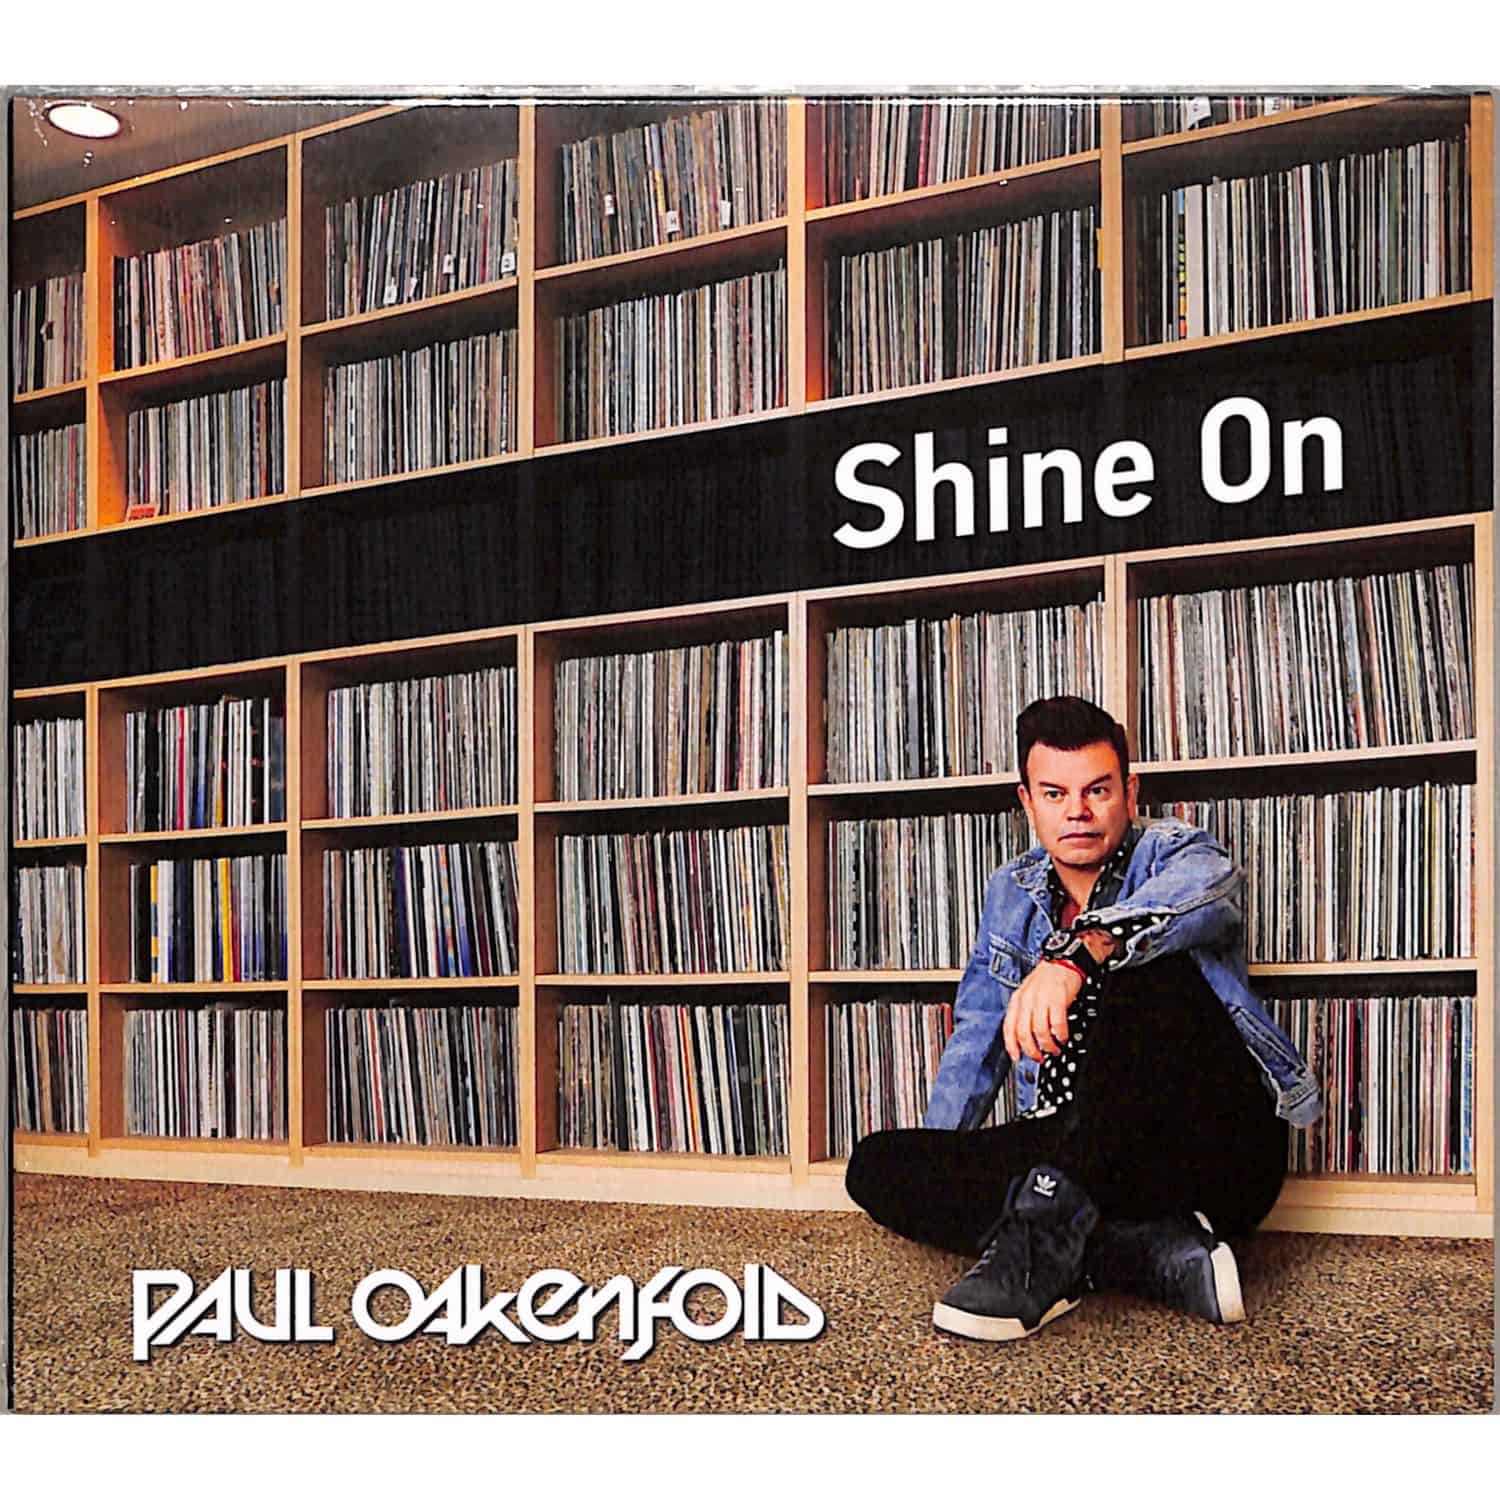 Paul Oakenfold - SHINE ON 